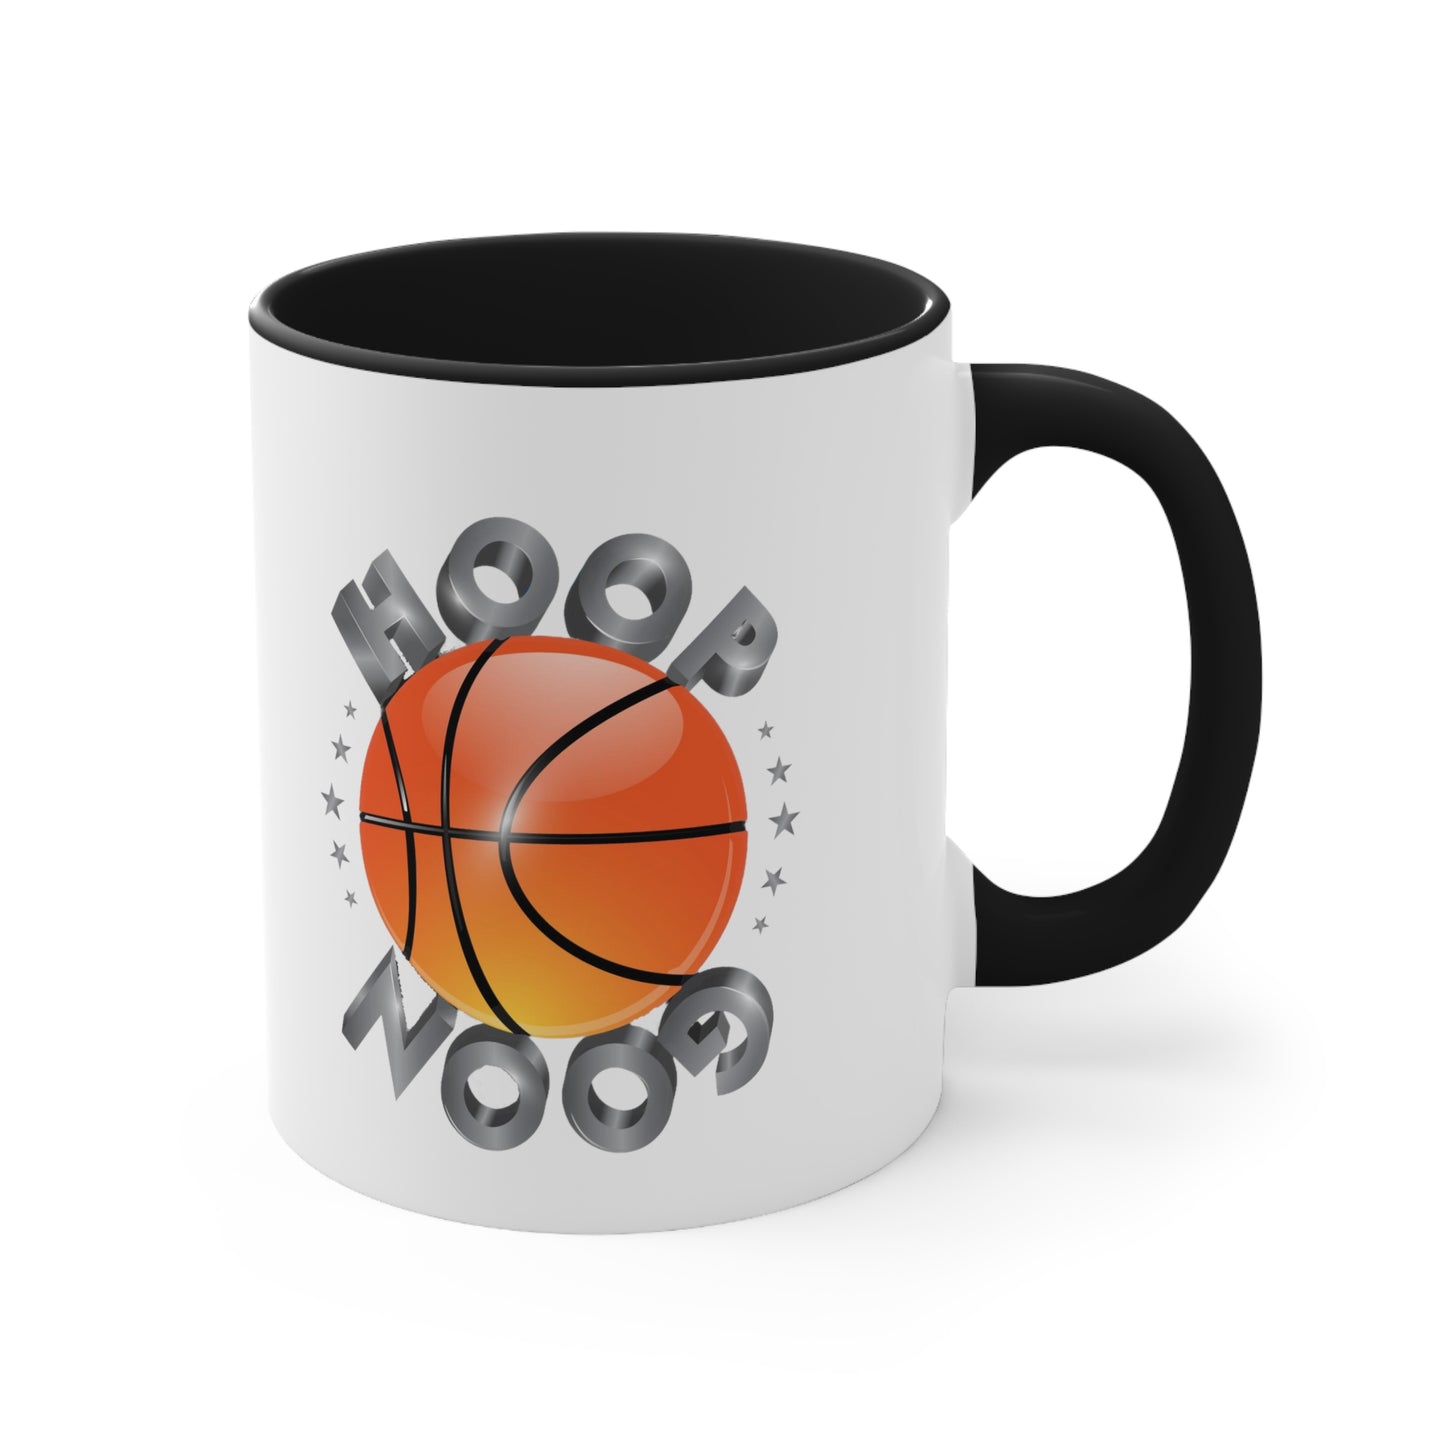 HoopGoon Accent Coffee Mug, 11oz